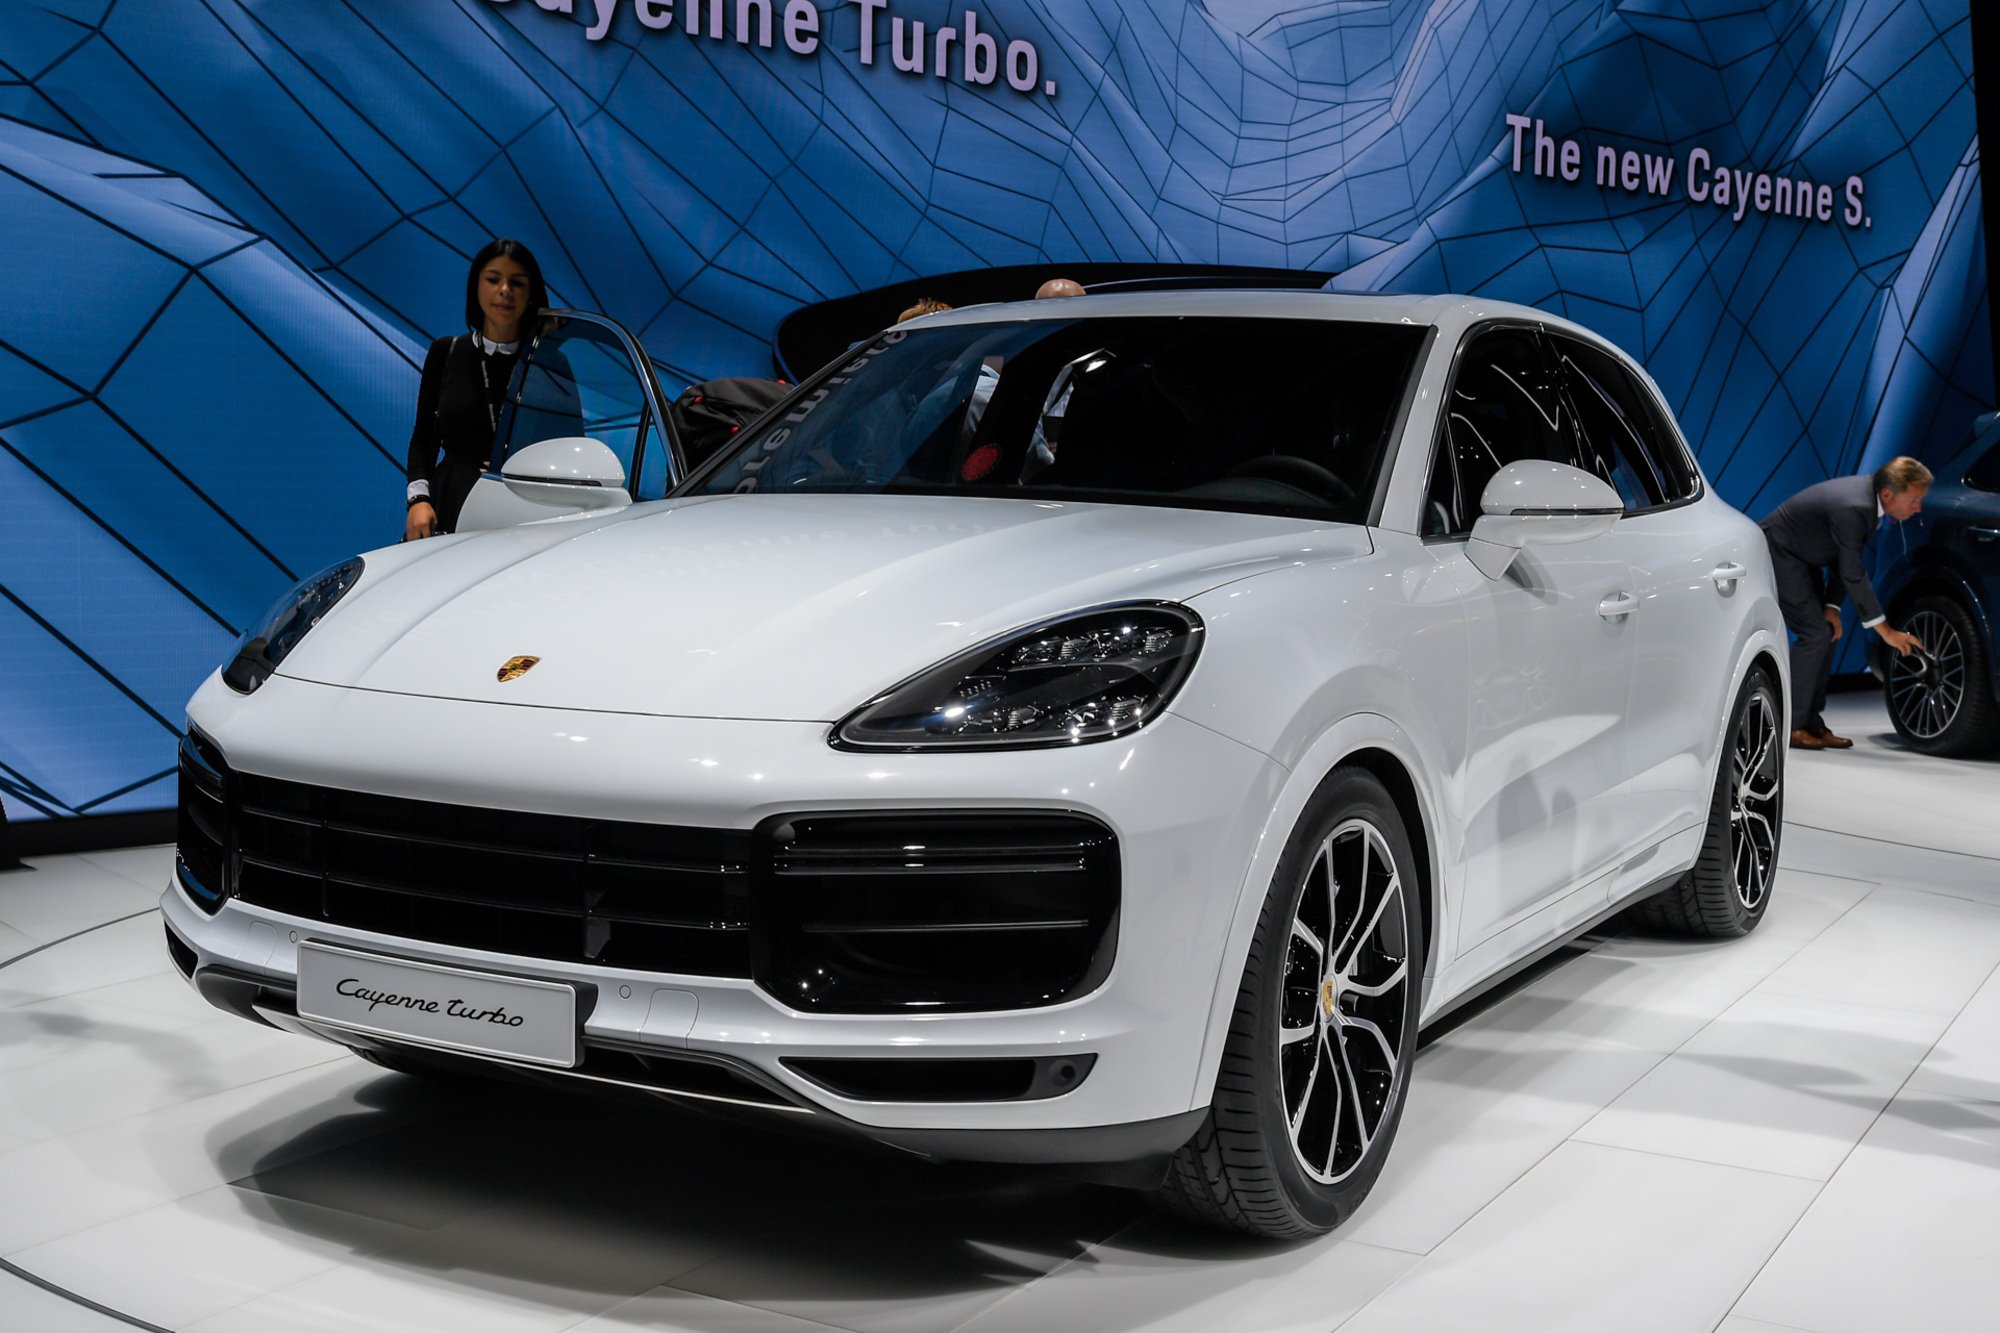 Porsche Cayenne Turbo al Salone di Francoforte 2017 [Video]